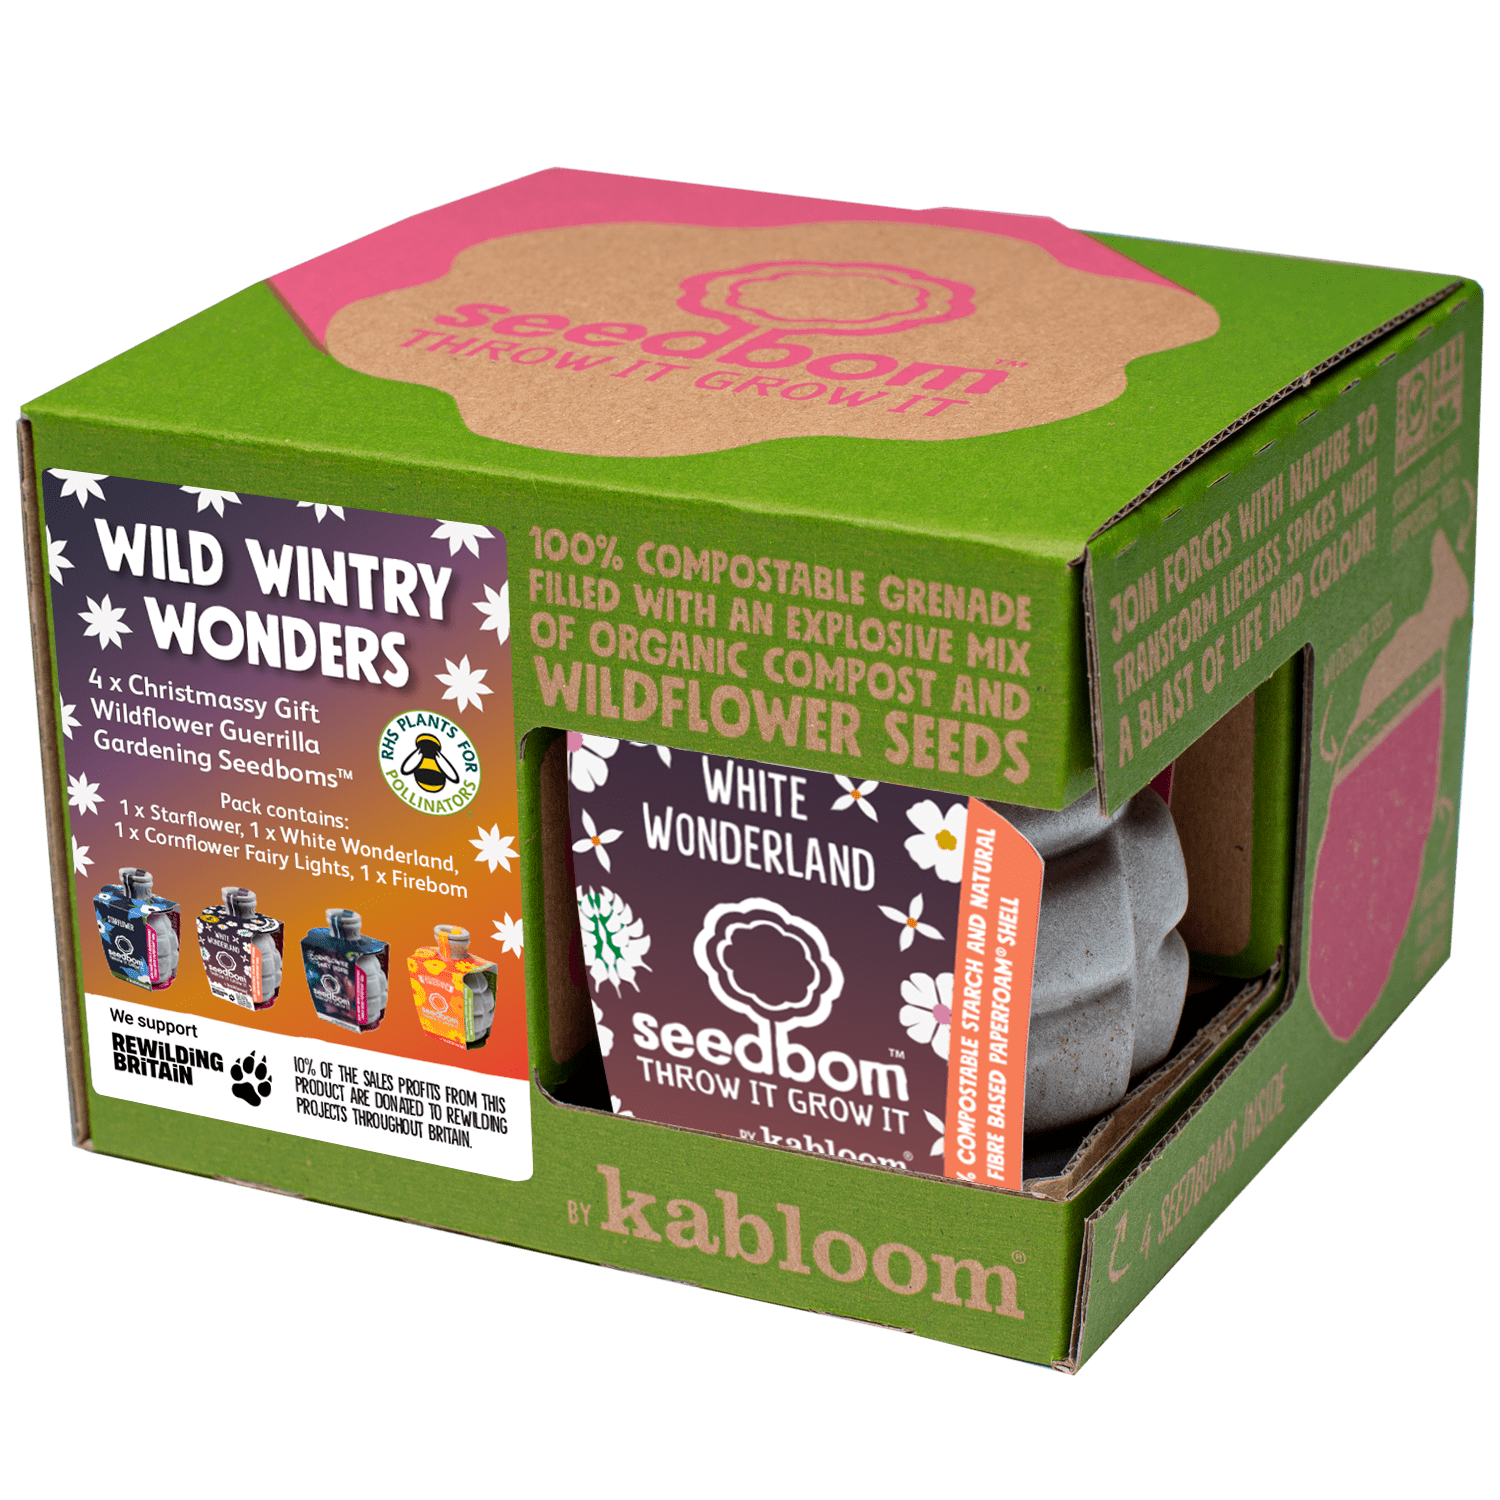 Wild Wintry Wonders Seedbom Gift Set